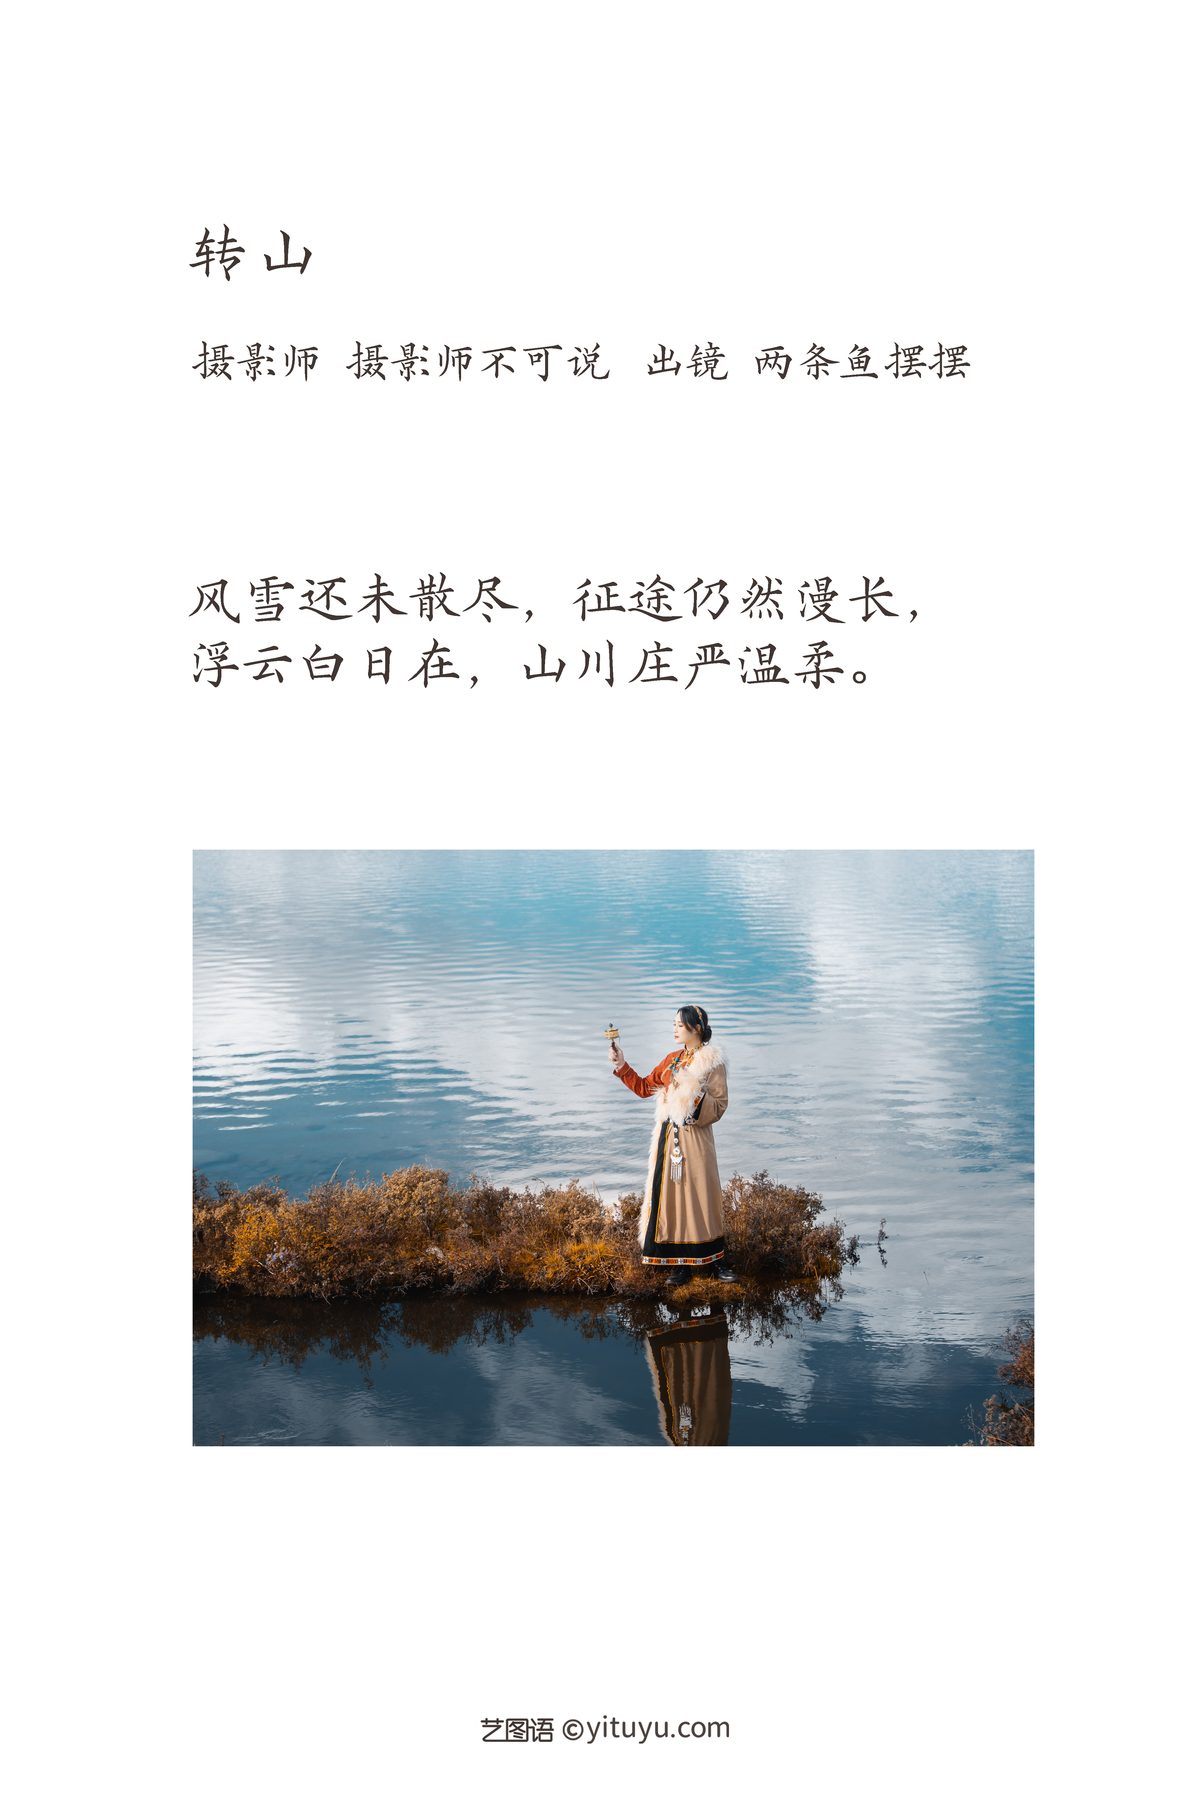 YiTuYu艺图语 Vol 3493 Liang Tiao Yu Bai Bai 0002 8673029418.jpg